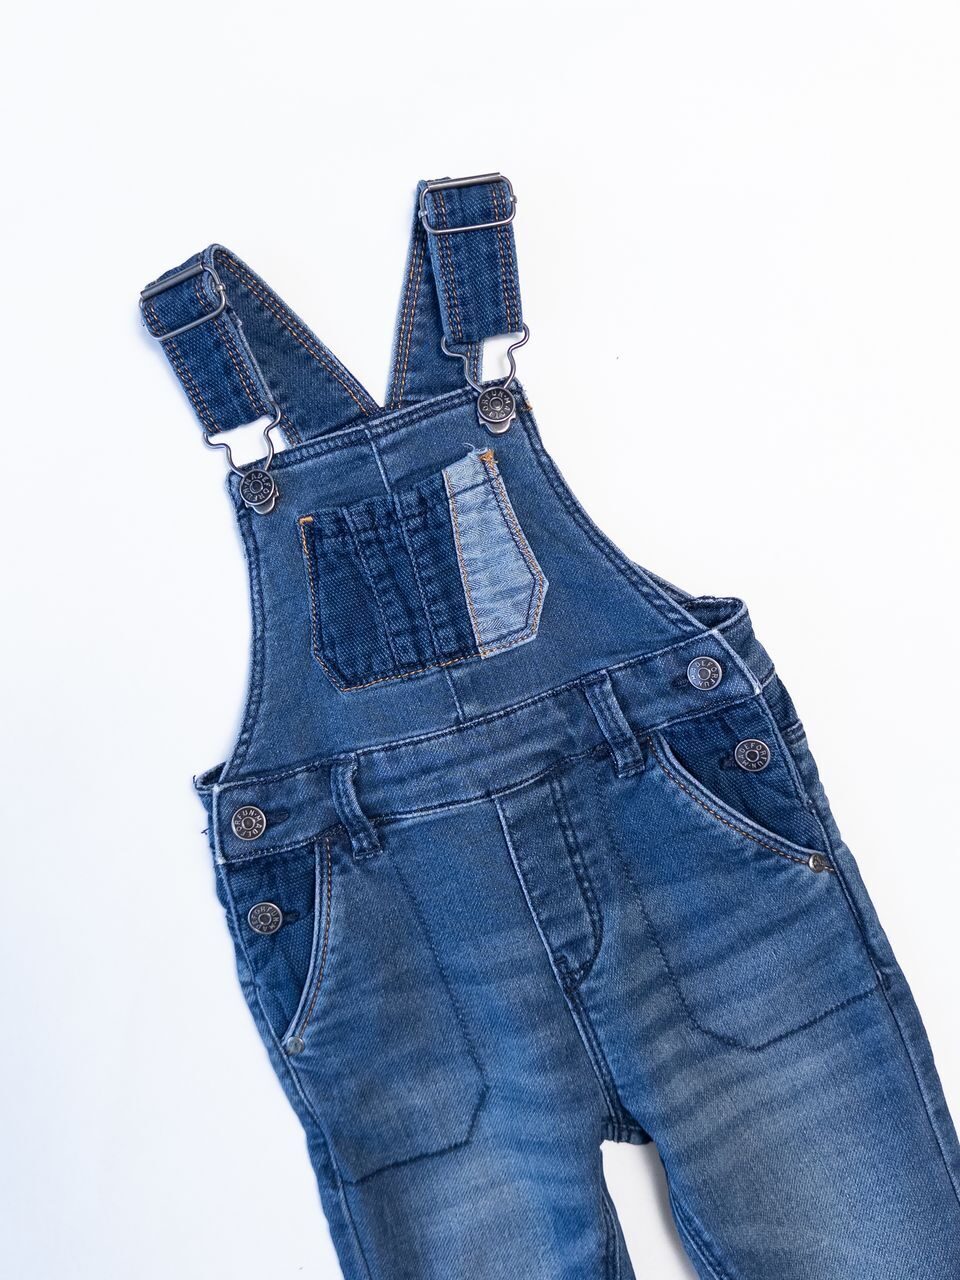 Комбинезон джинсовый для мальчика на регулируемых шлейках с карманами цвет темно-синий рост 74 см OVS